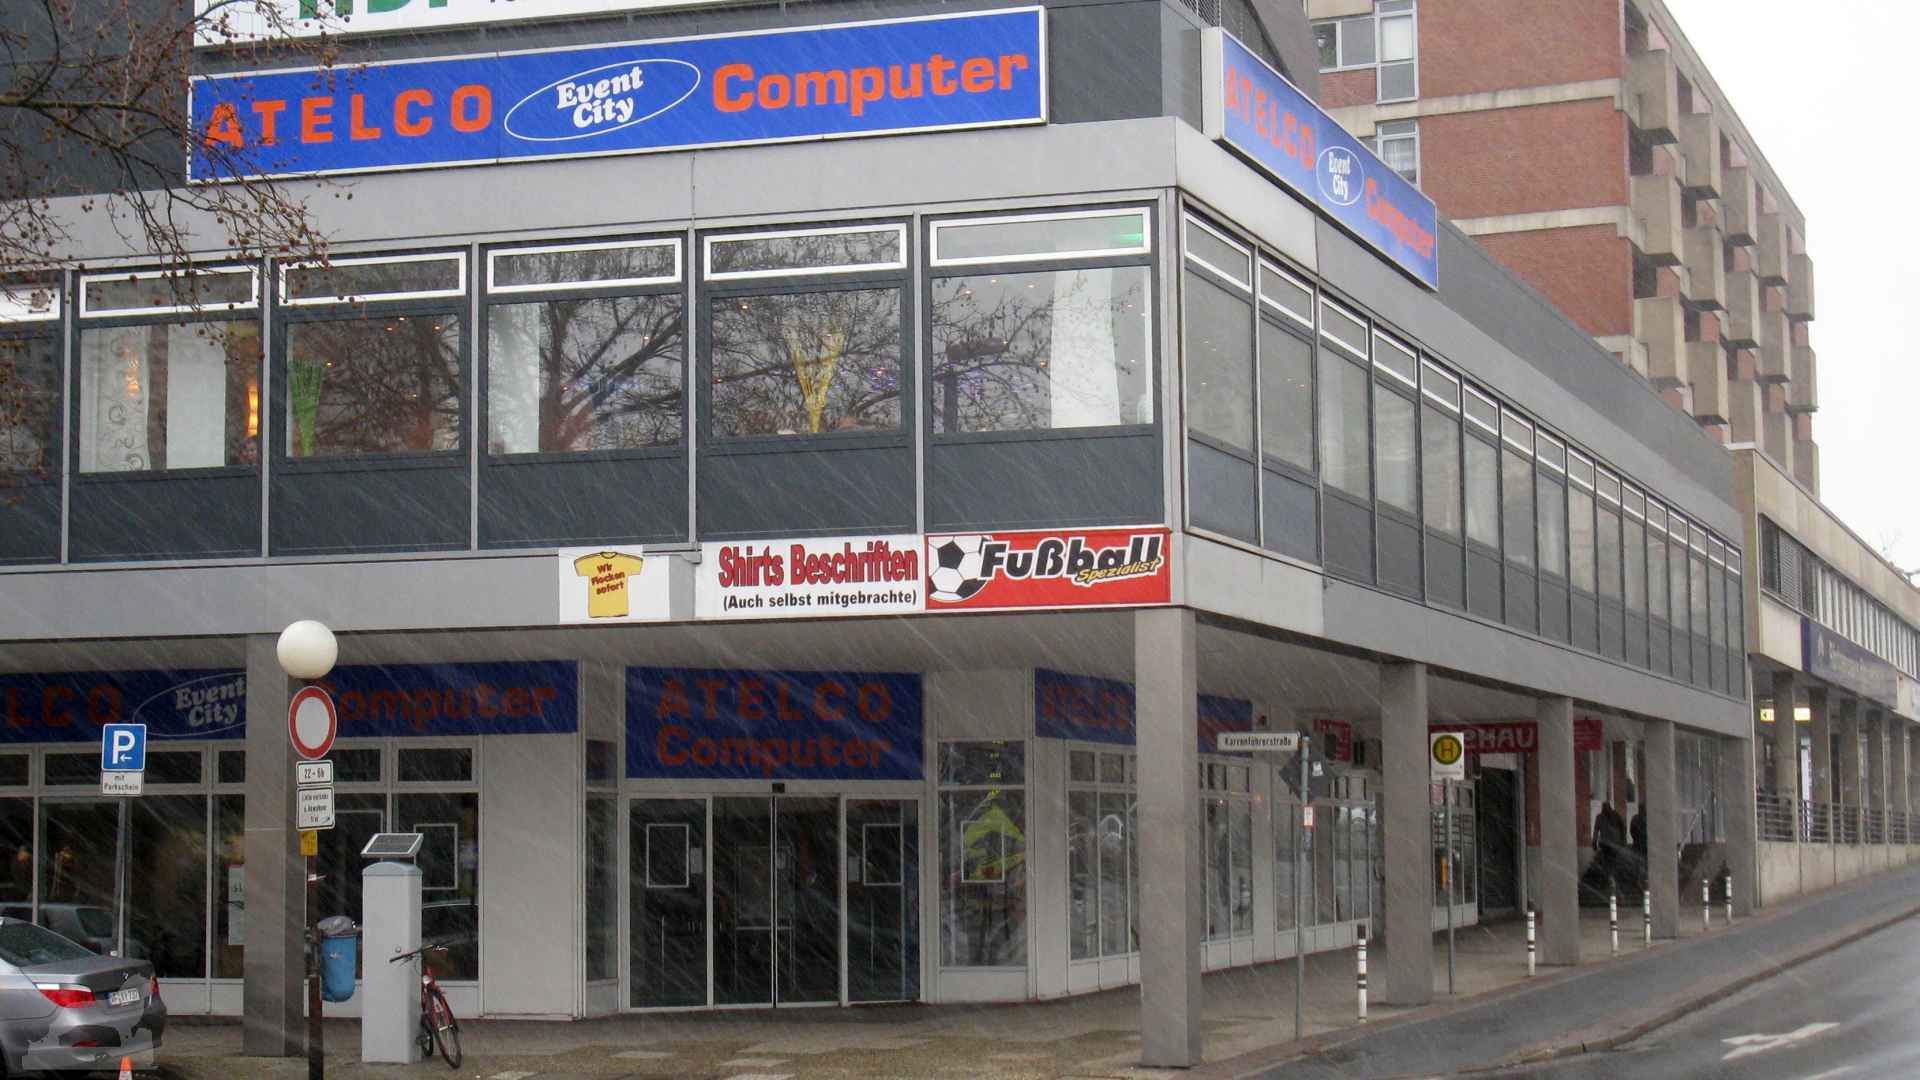 ehemaliger Computer-Händler Atelco in der Karrenführerstraße